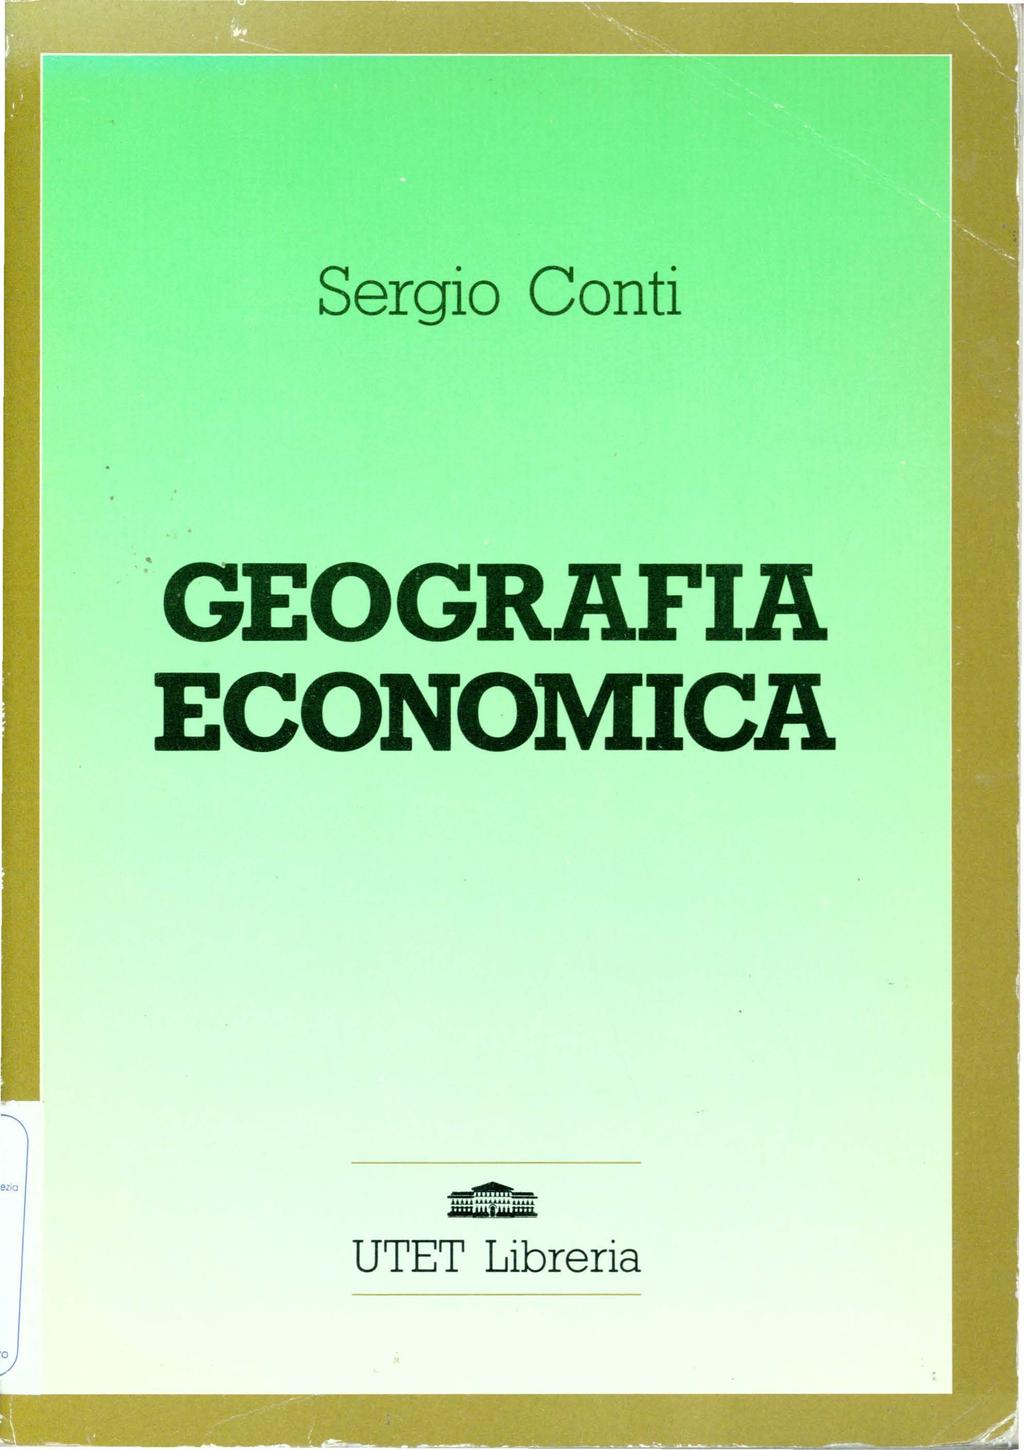 Sergio Conti.